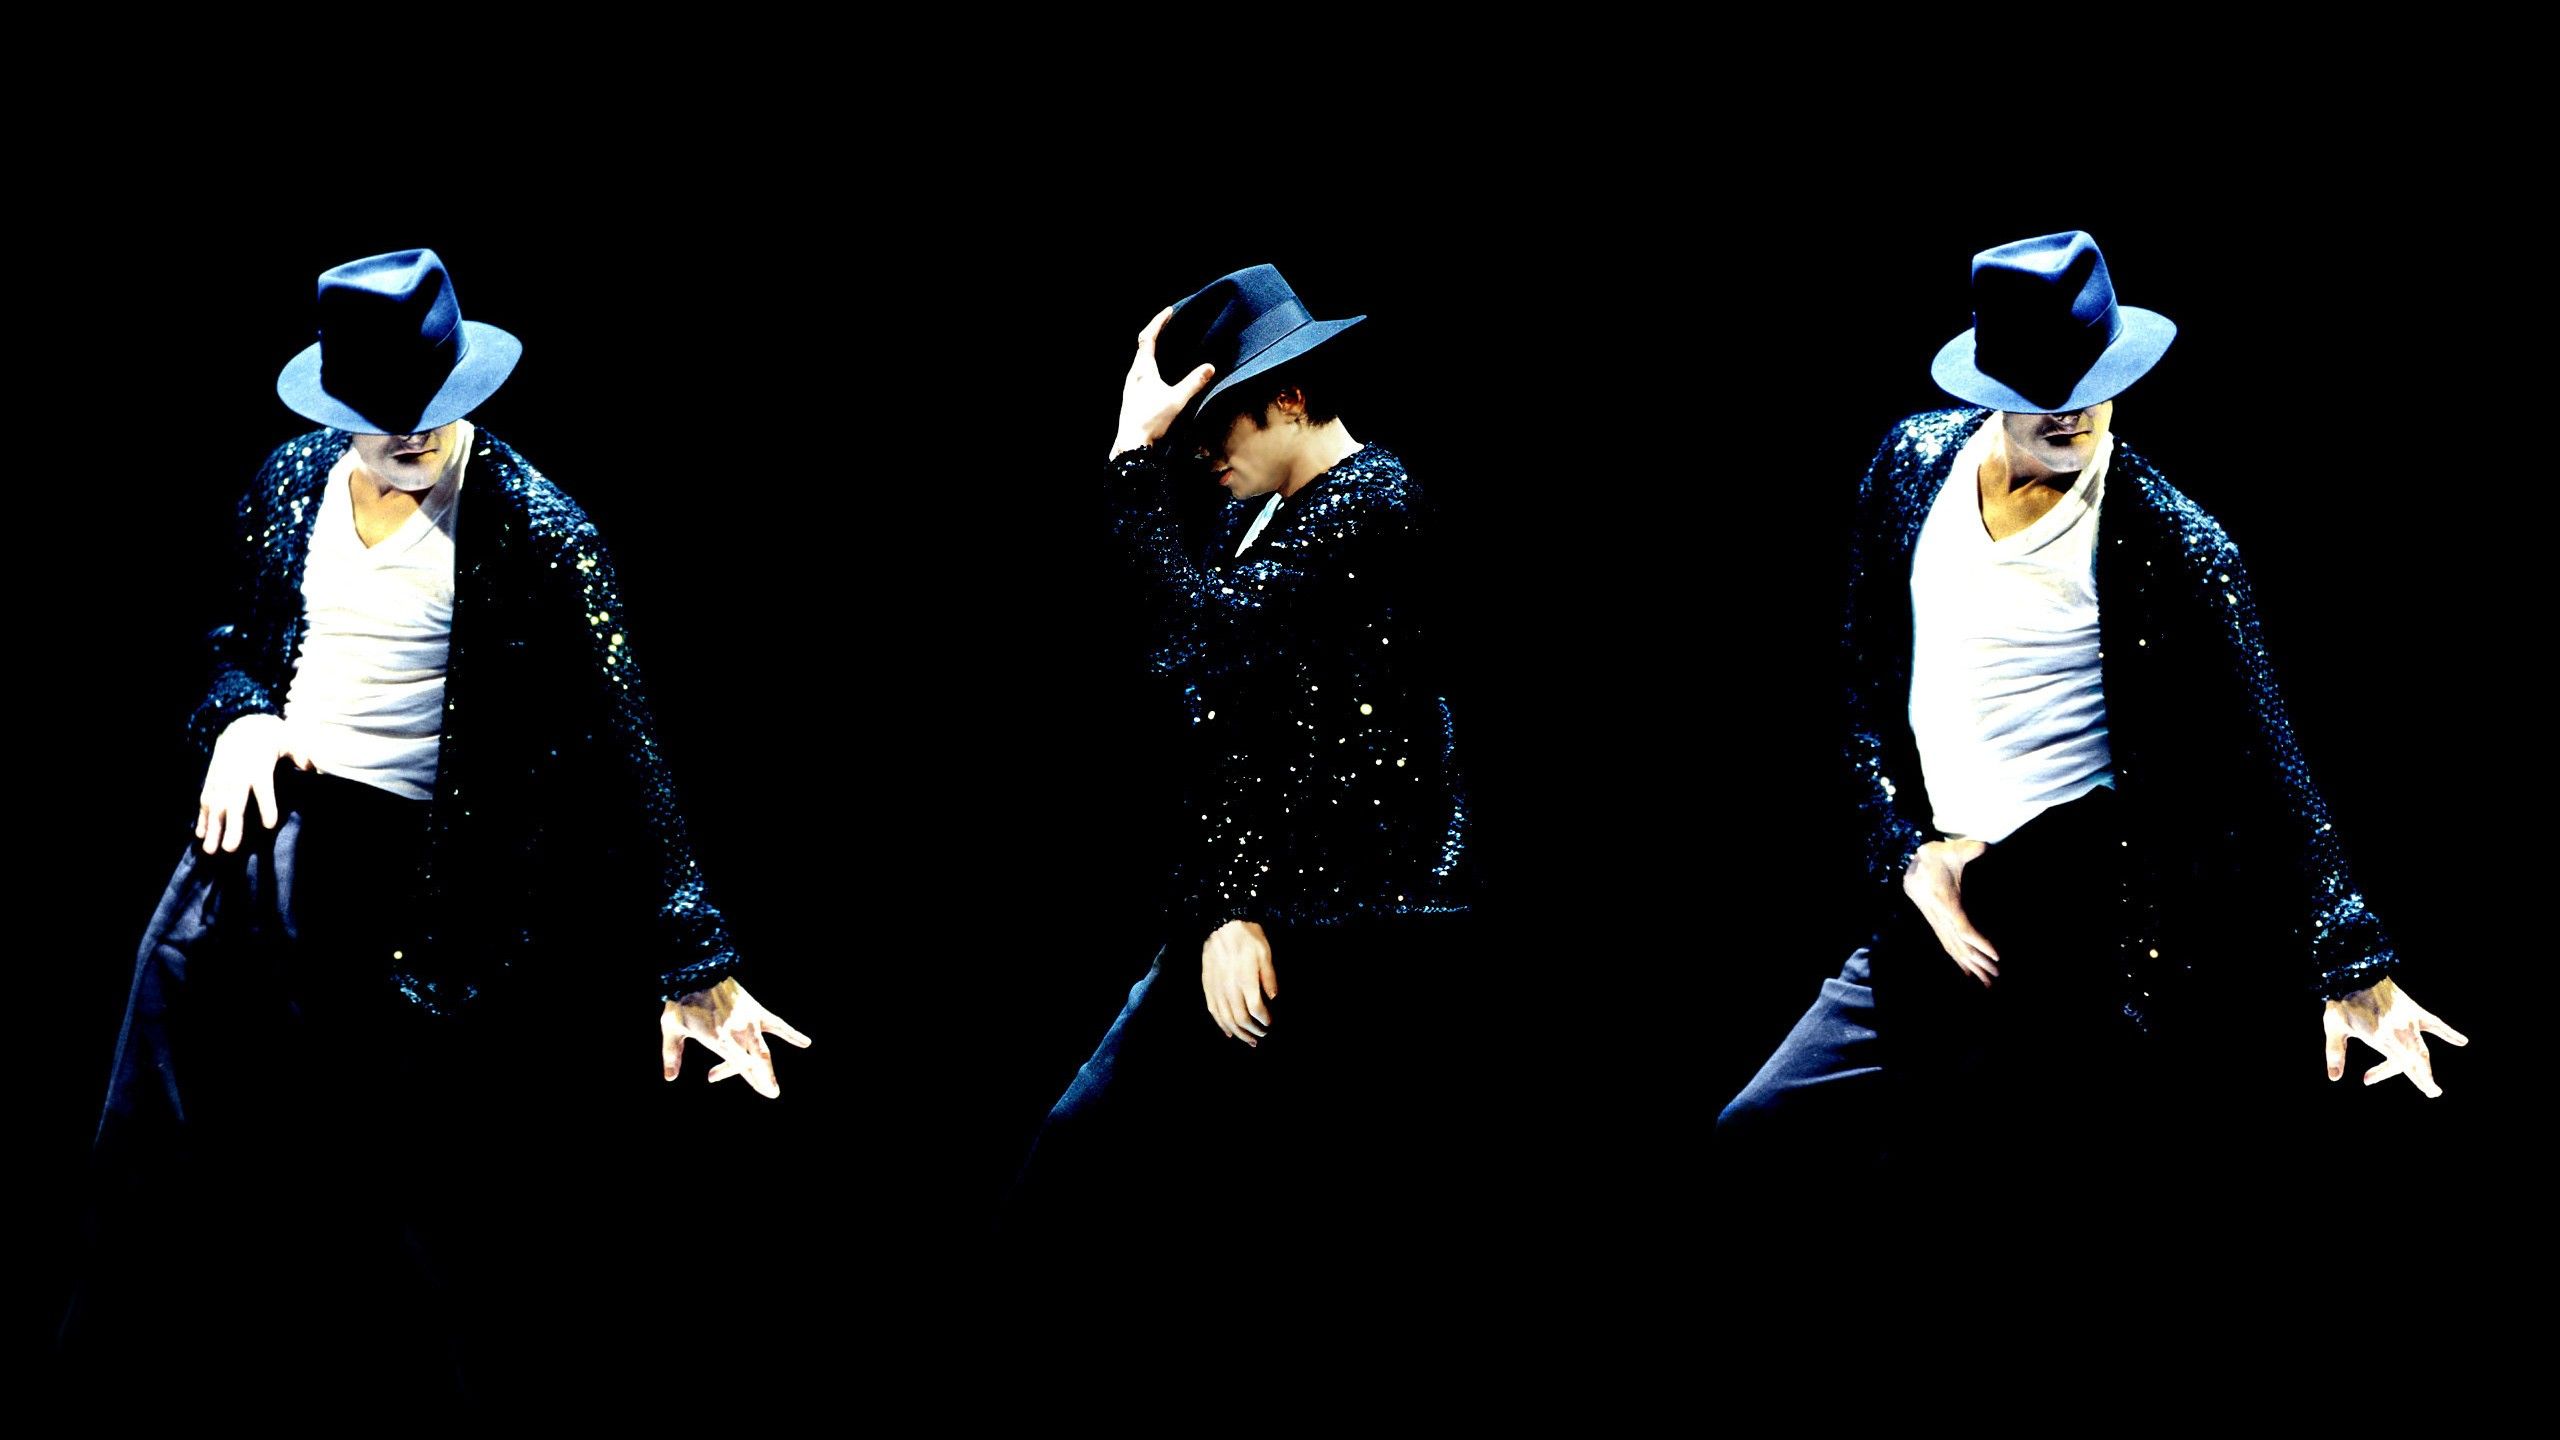 Michael Jackson haciendo baile, celebridades HD, fondos de pantalla 4k, imágenes